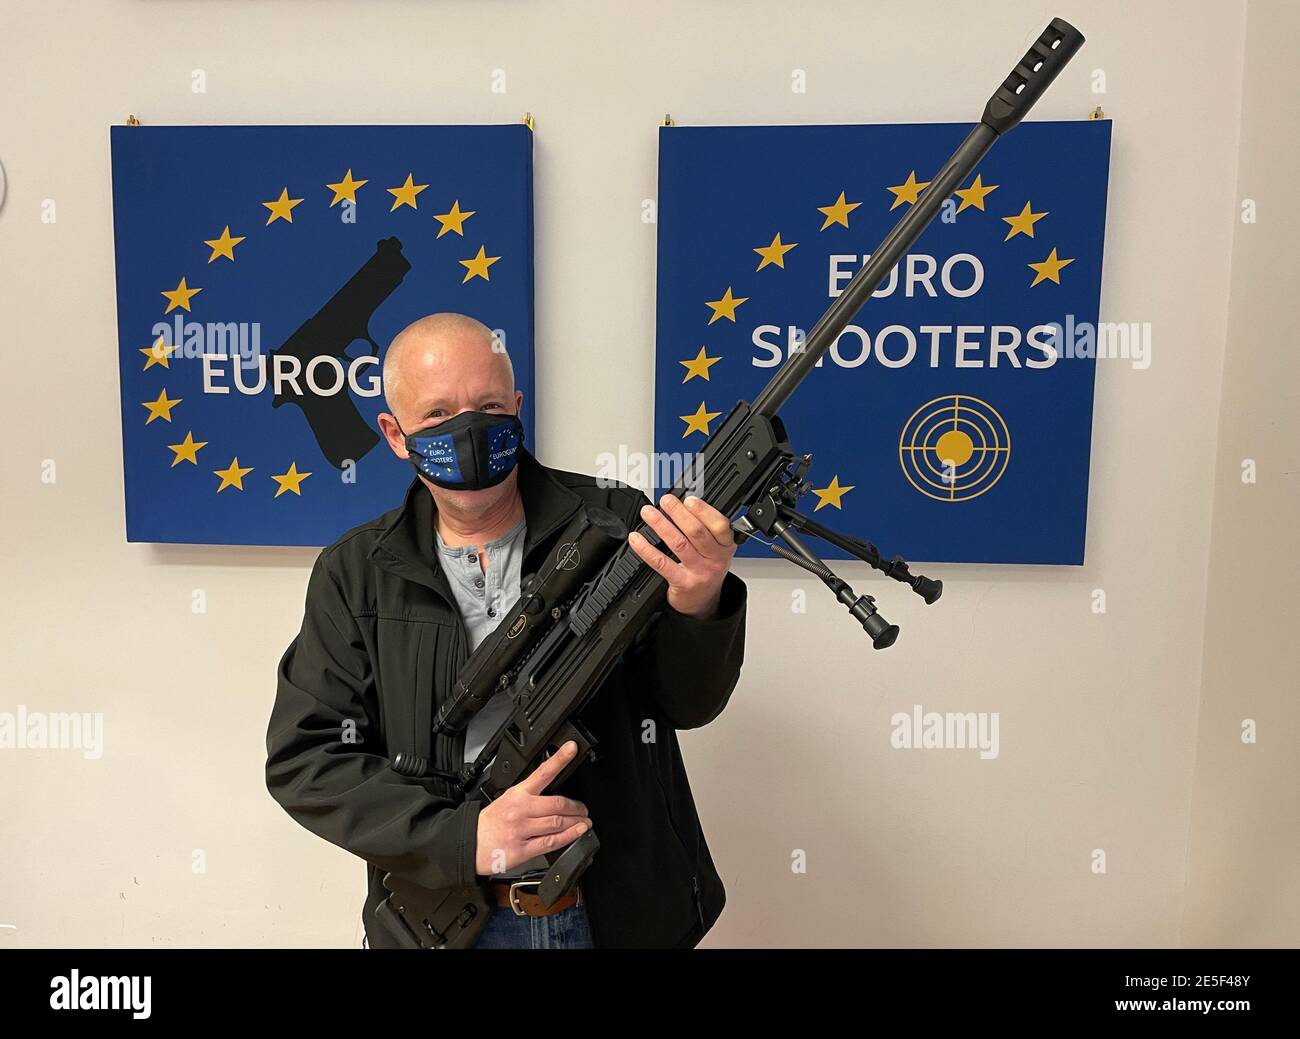 08 January 2021, Austria, Wien: Markus Schwaiger, Austrian arms dealer,  shows the bolt action rifle Savage Arms cal. 338 Lapua Magnum. The Savage  Arms cal. 338 Lapua Magnum is a bolt action